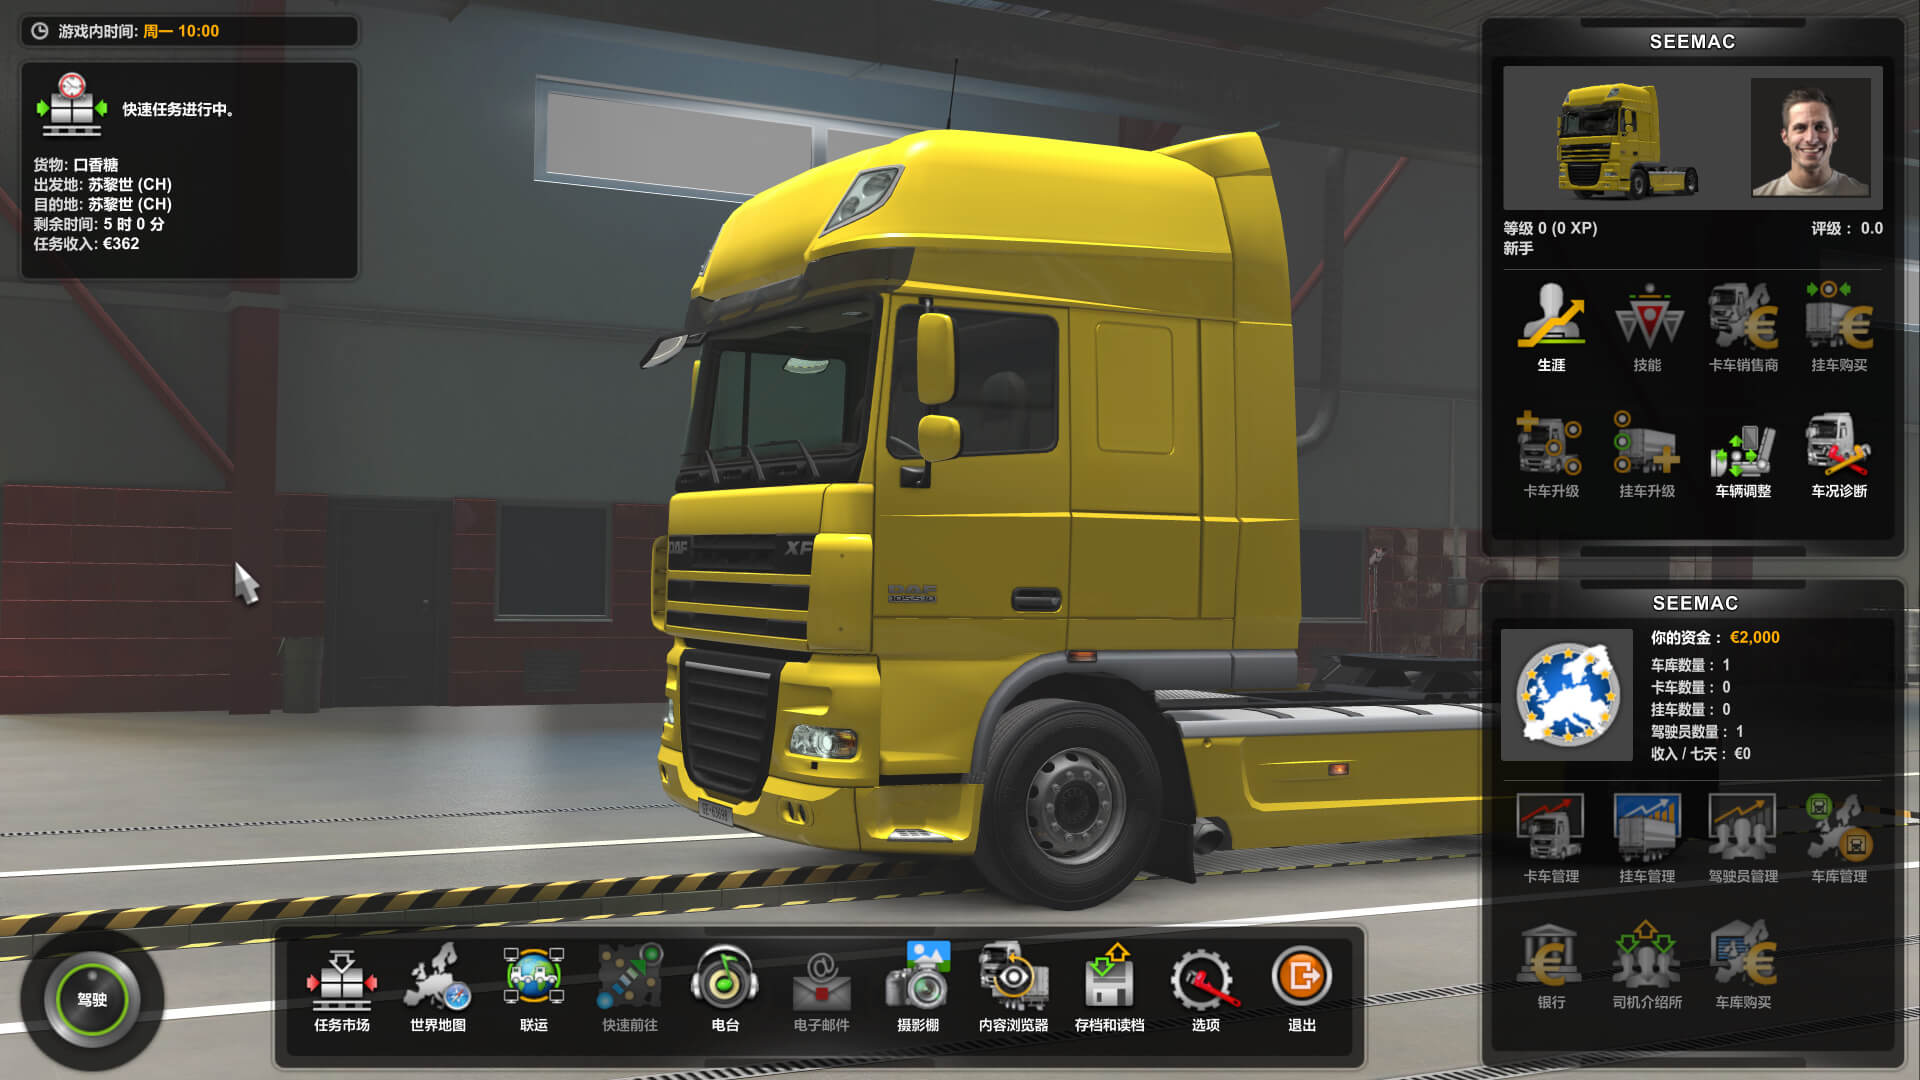 欧洲卡车模拟2 Euro Truck Simulator 2 for Mac v1.49.2.23s 中文原生版 含全部DLC-5